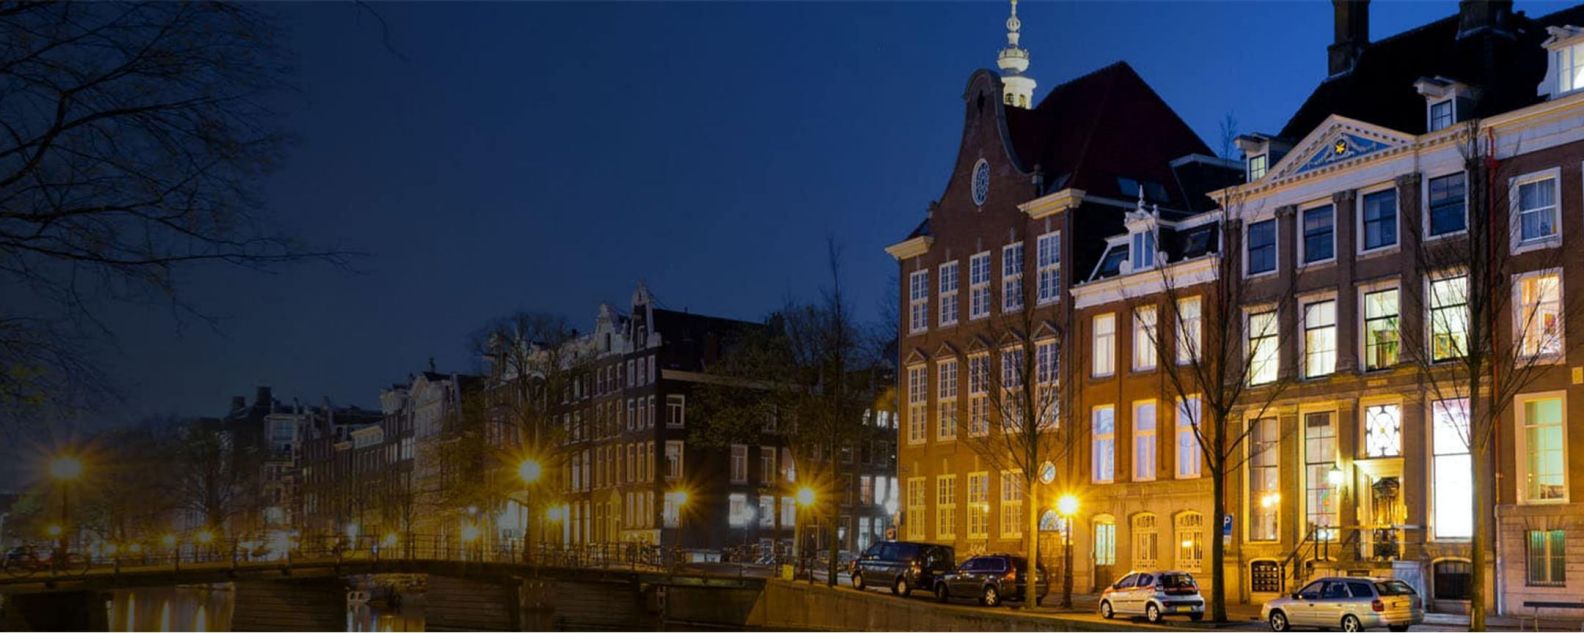 Foto de edificios tradicionales con coches estacionados en la orilla de una calle en Ámsterdam, Países Bajos.